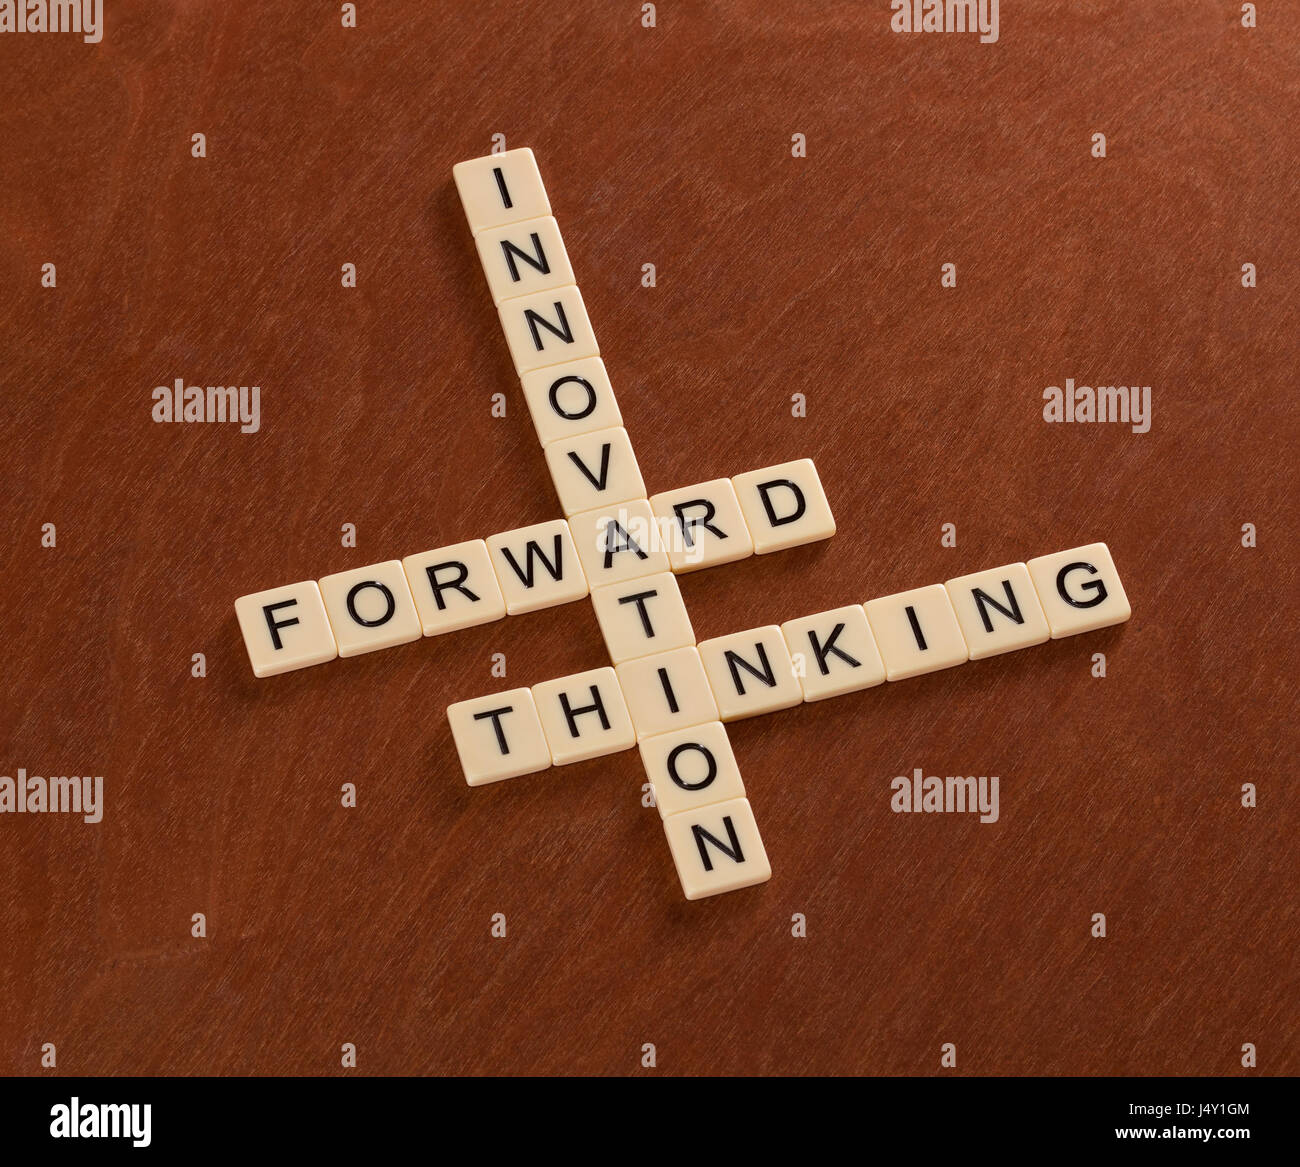 Kreuzworträtsel mit Worten Innovation, Forward, denken. Innovativ sein Konzept. Elfenbein Fliesen mit Großbuchstaben auf Mahagoni Brett. Stockfoto